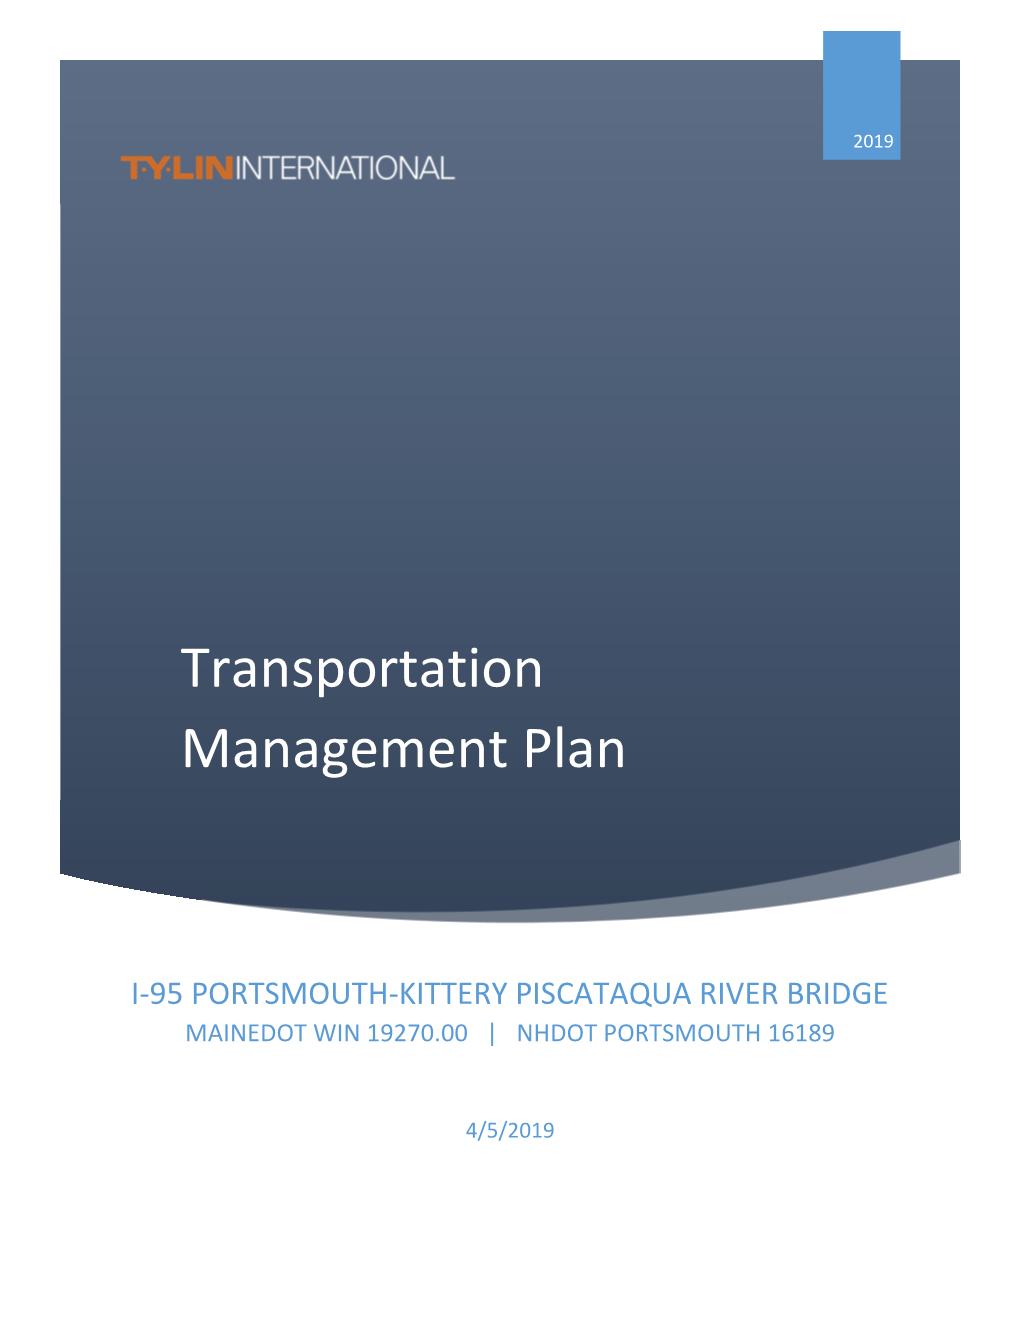 Portsmouth Kittery Transportation Management Plan